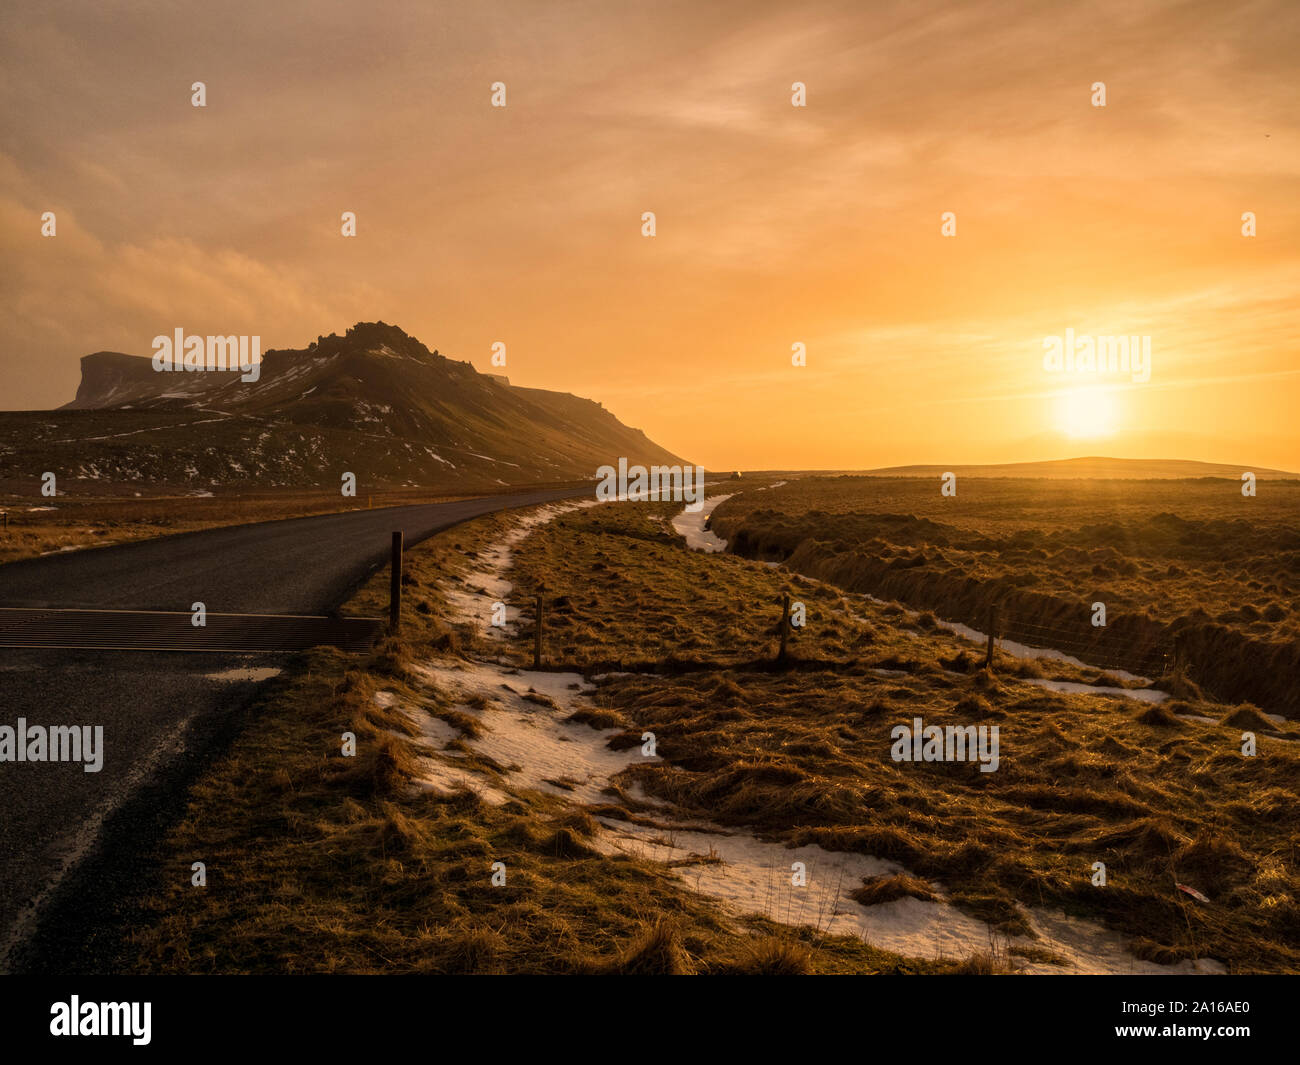 Iceland, Vik, Landscape at sunset Stock Photo